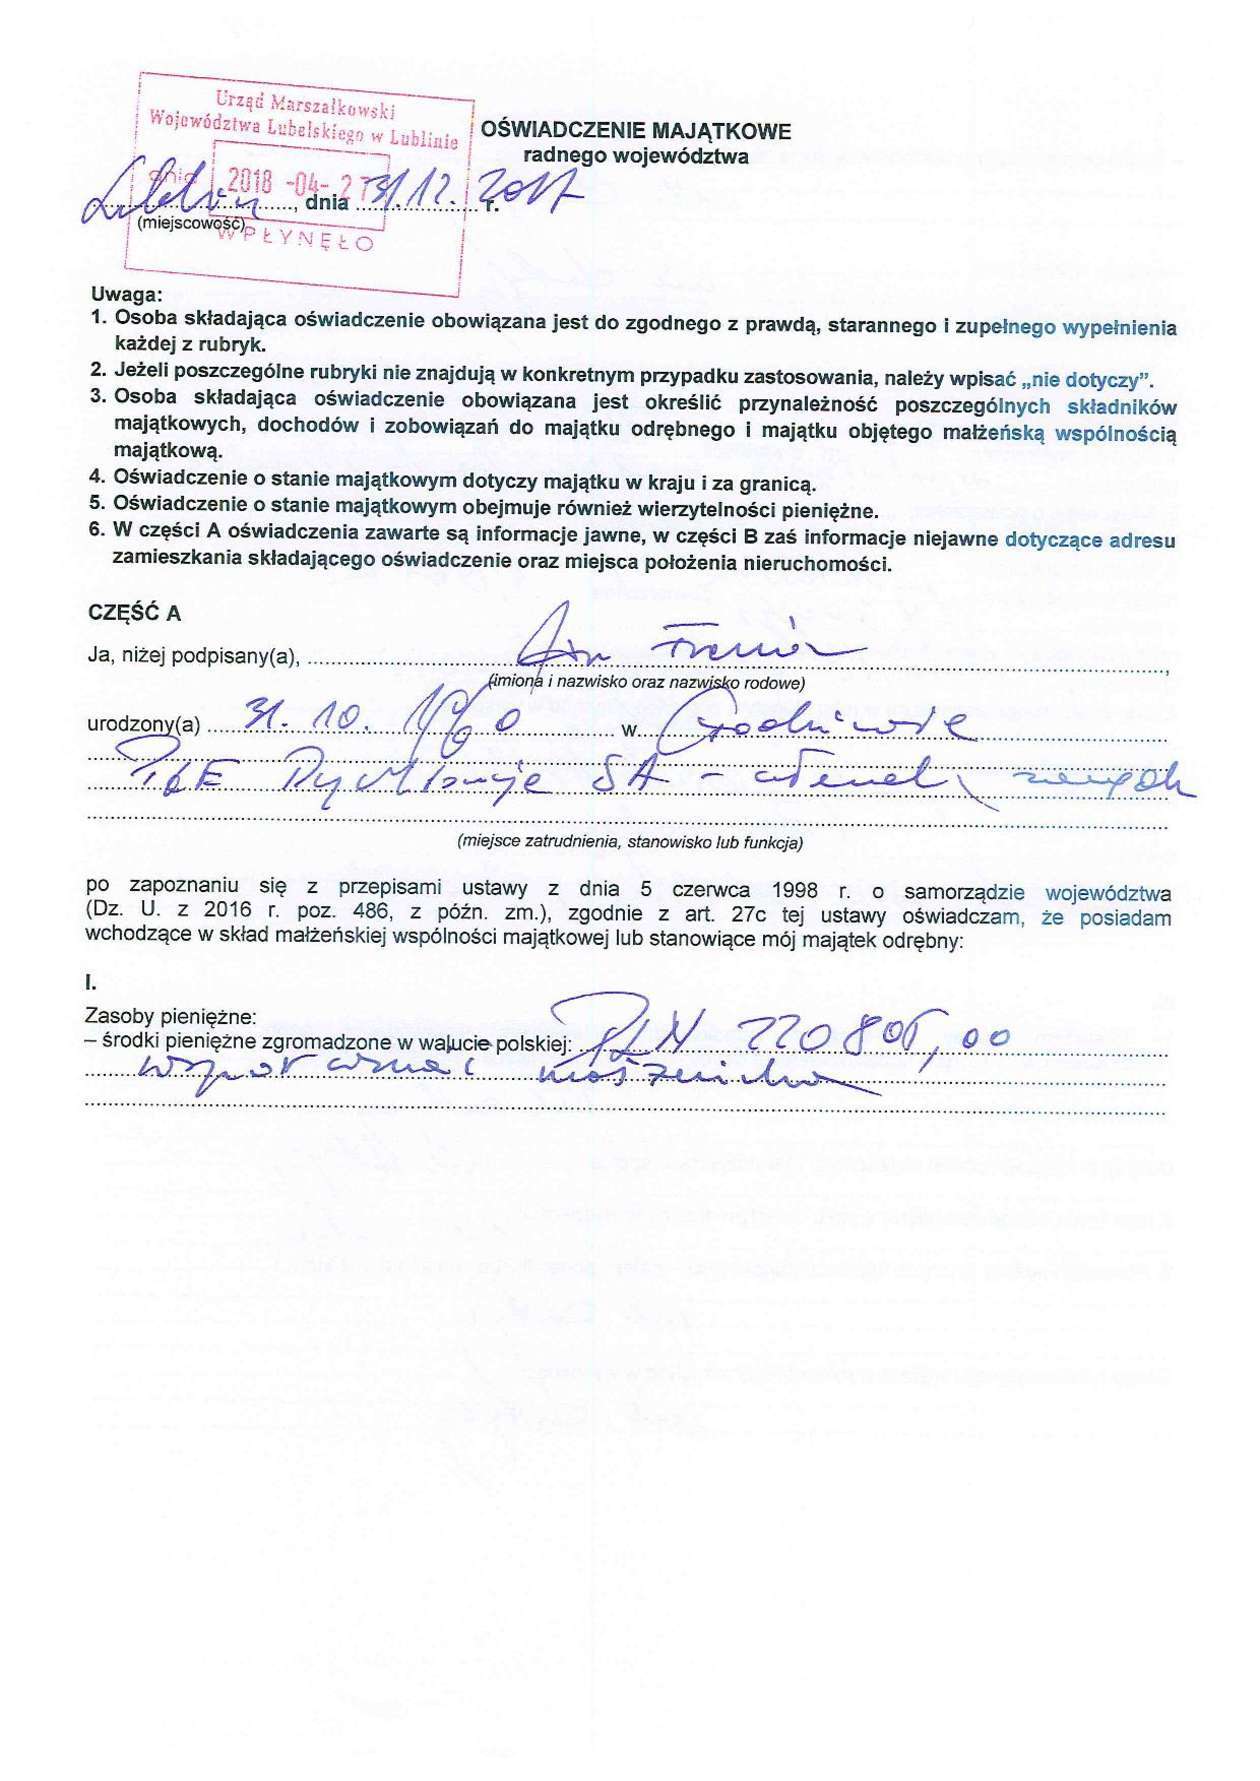  Oświadczenia majątkowe radnych wojewódzkich PiS (zdjęcie 3) - Autor: Jan Frania - oświadczenie majątkowe